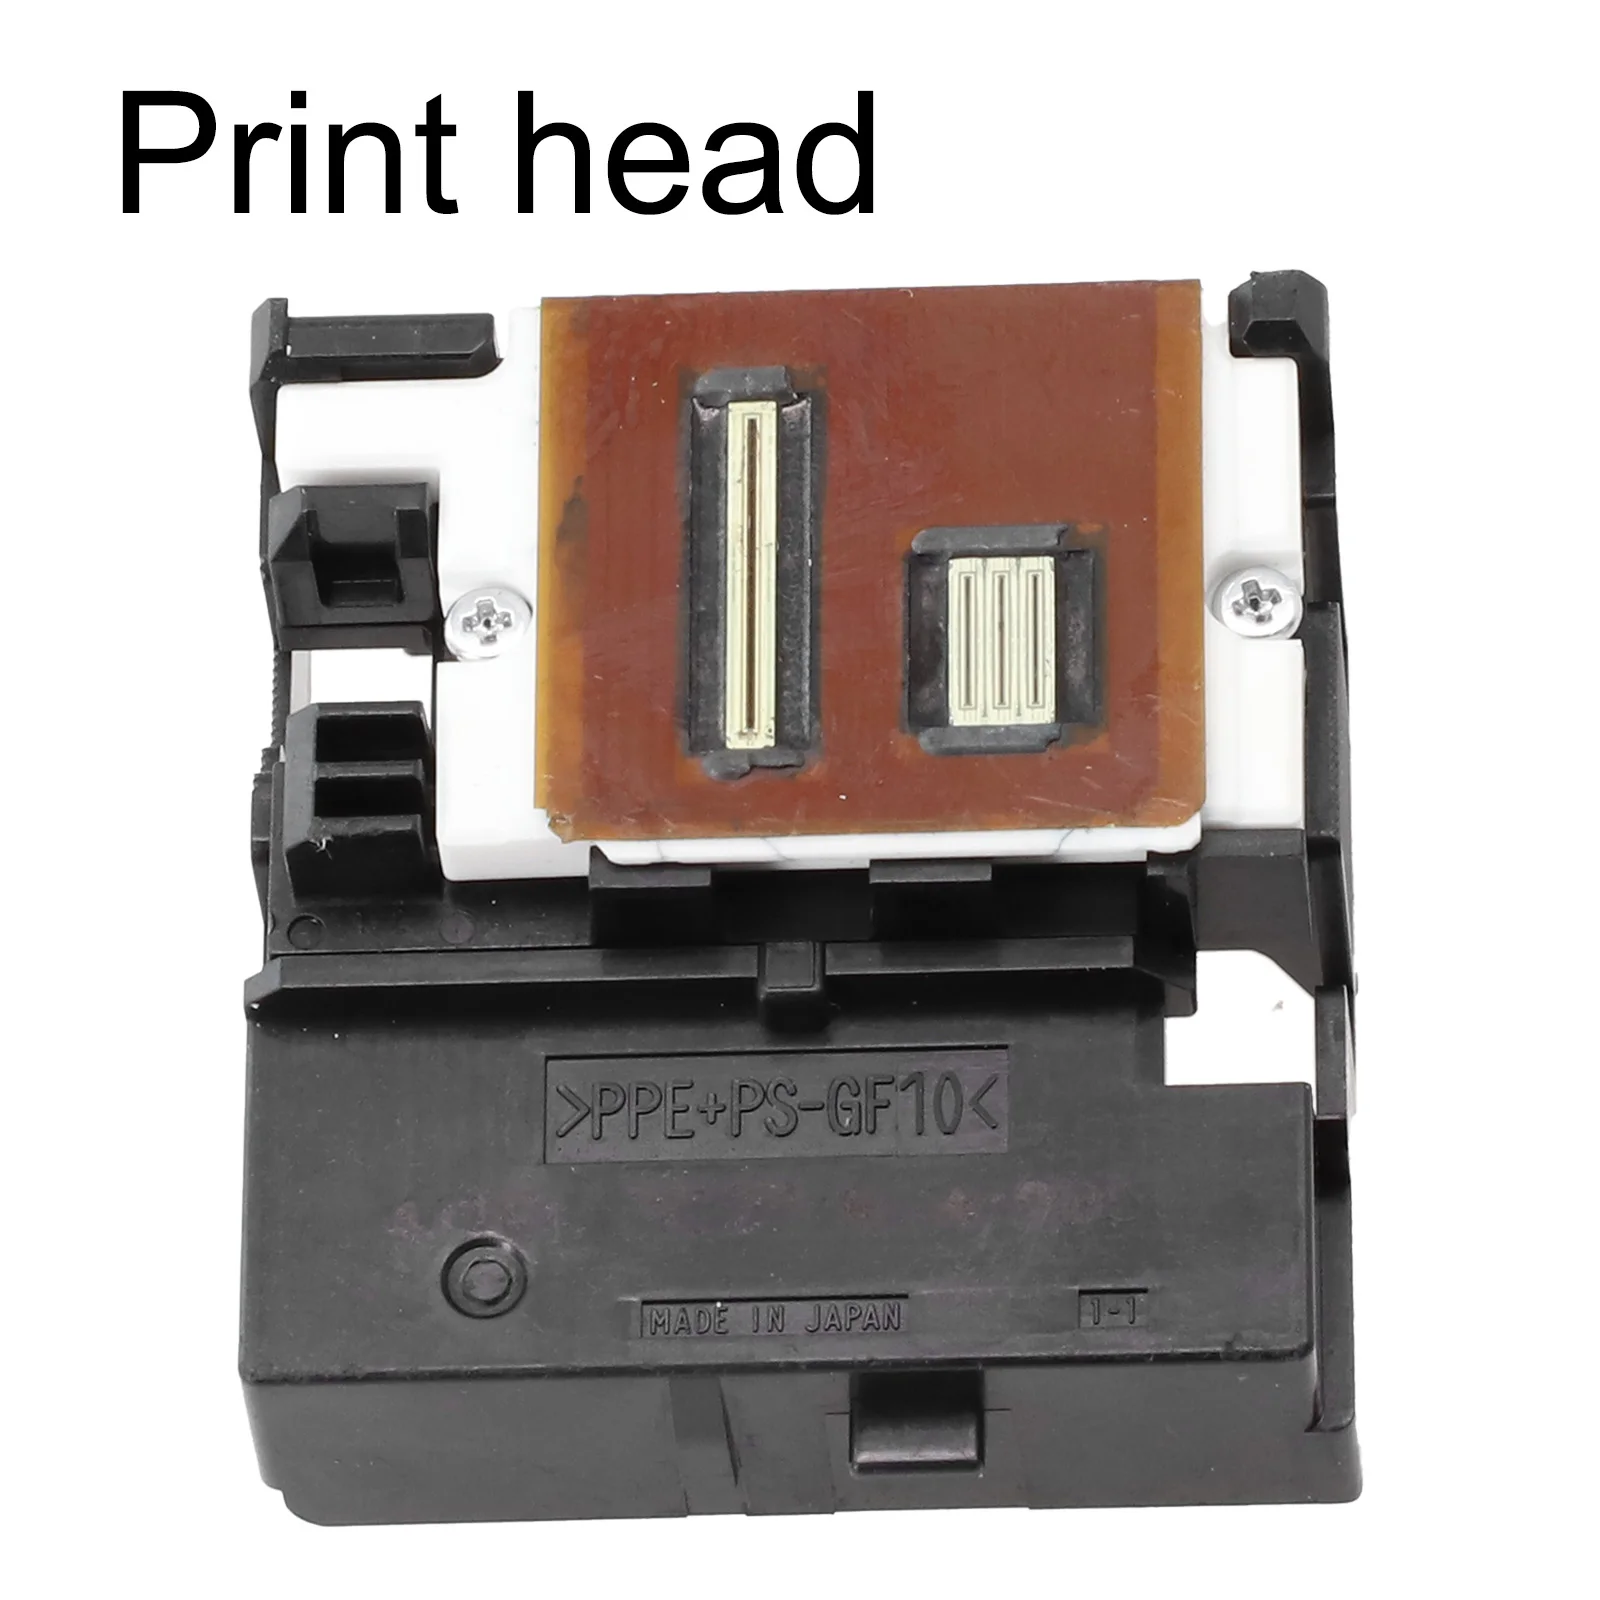 

Надежная печатающая головка QY6 0052 улучшает качество печати для принтеров IP90 IP90V IP80 I80 CF PL90 и PL95